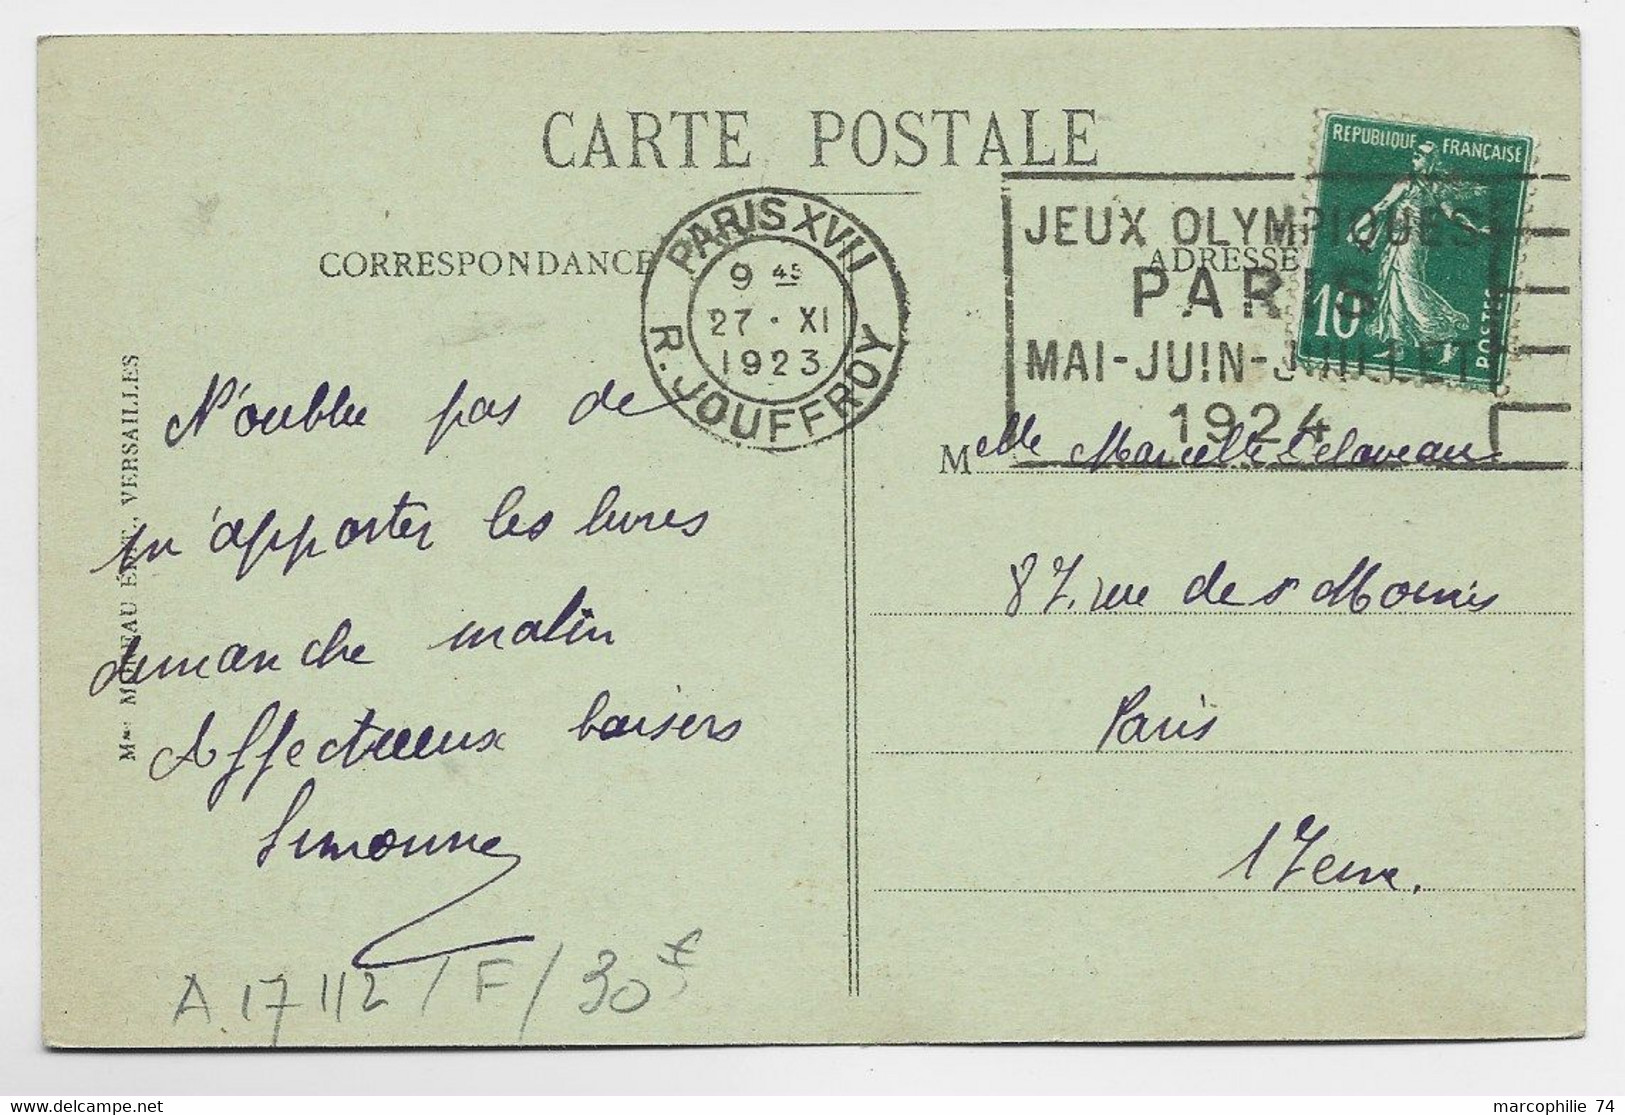 FRANCE SEMEUSE 10C CARTE MEC FLIER JEUX OLYMPIQUES PARIS R JOUFFROY 27.XI.1923 COTE 30€ - Summer 1924: Paris